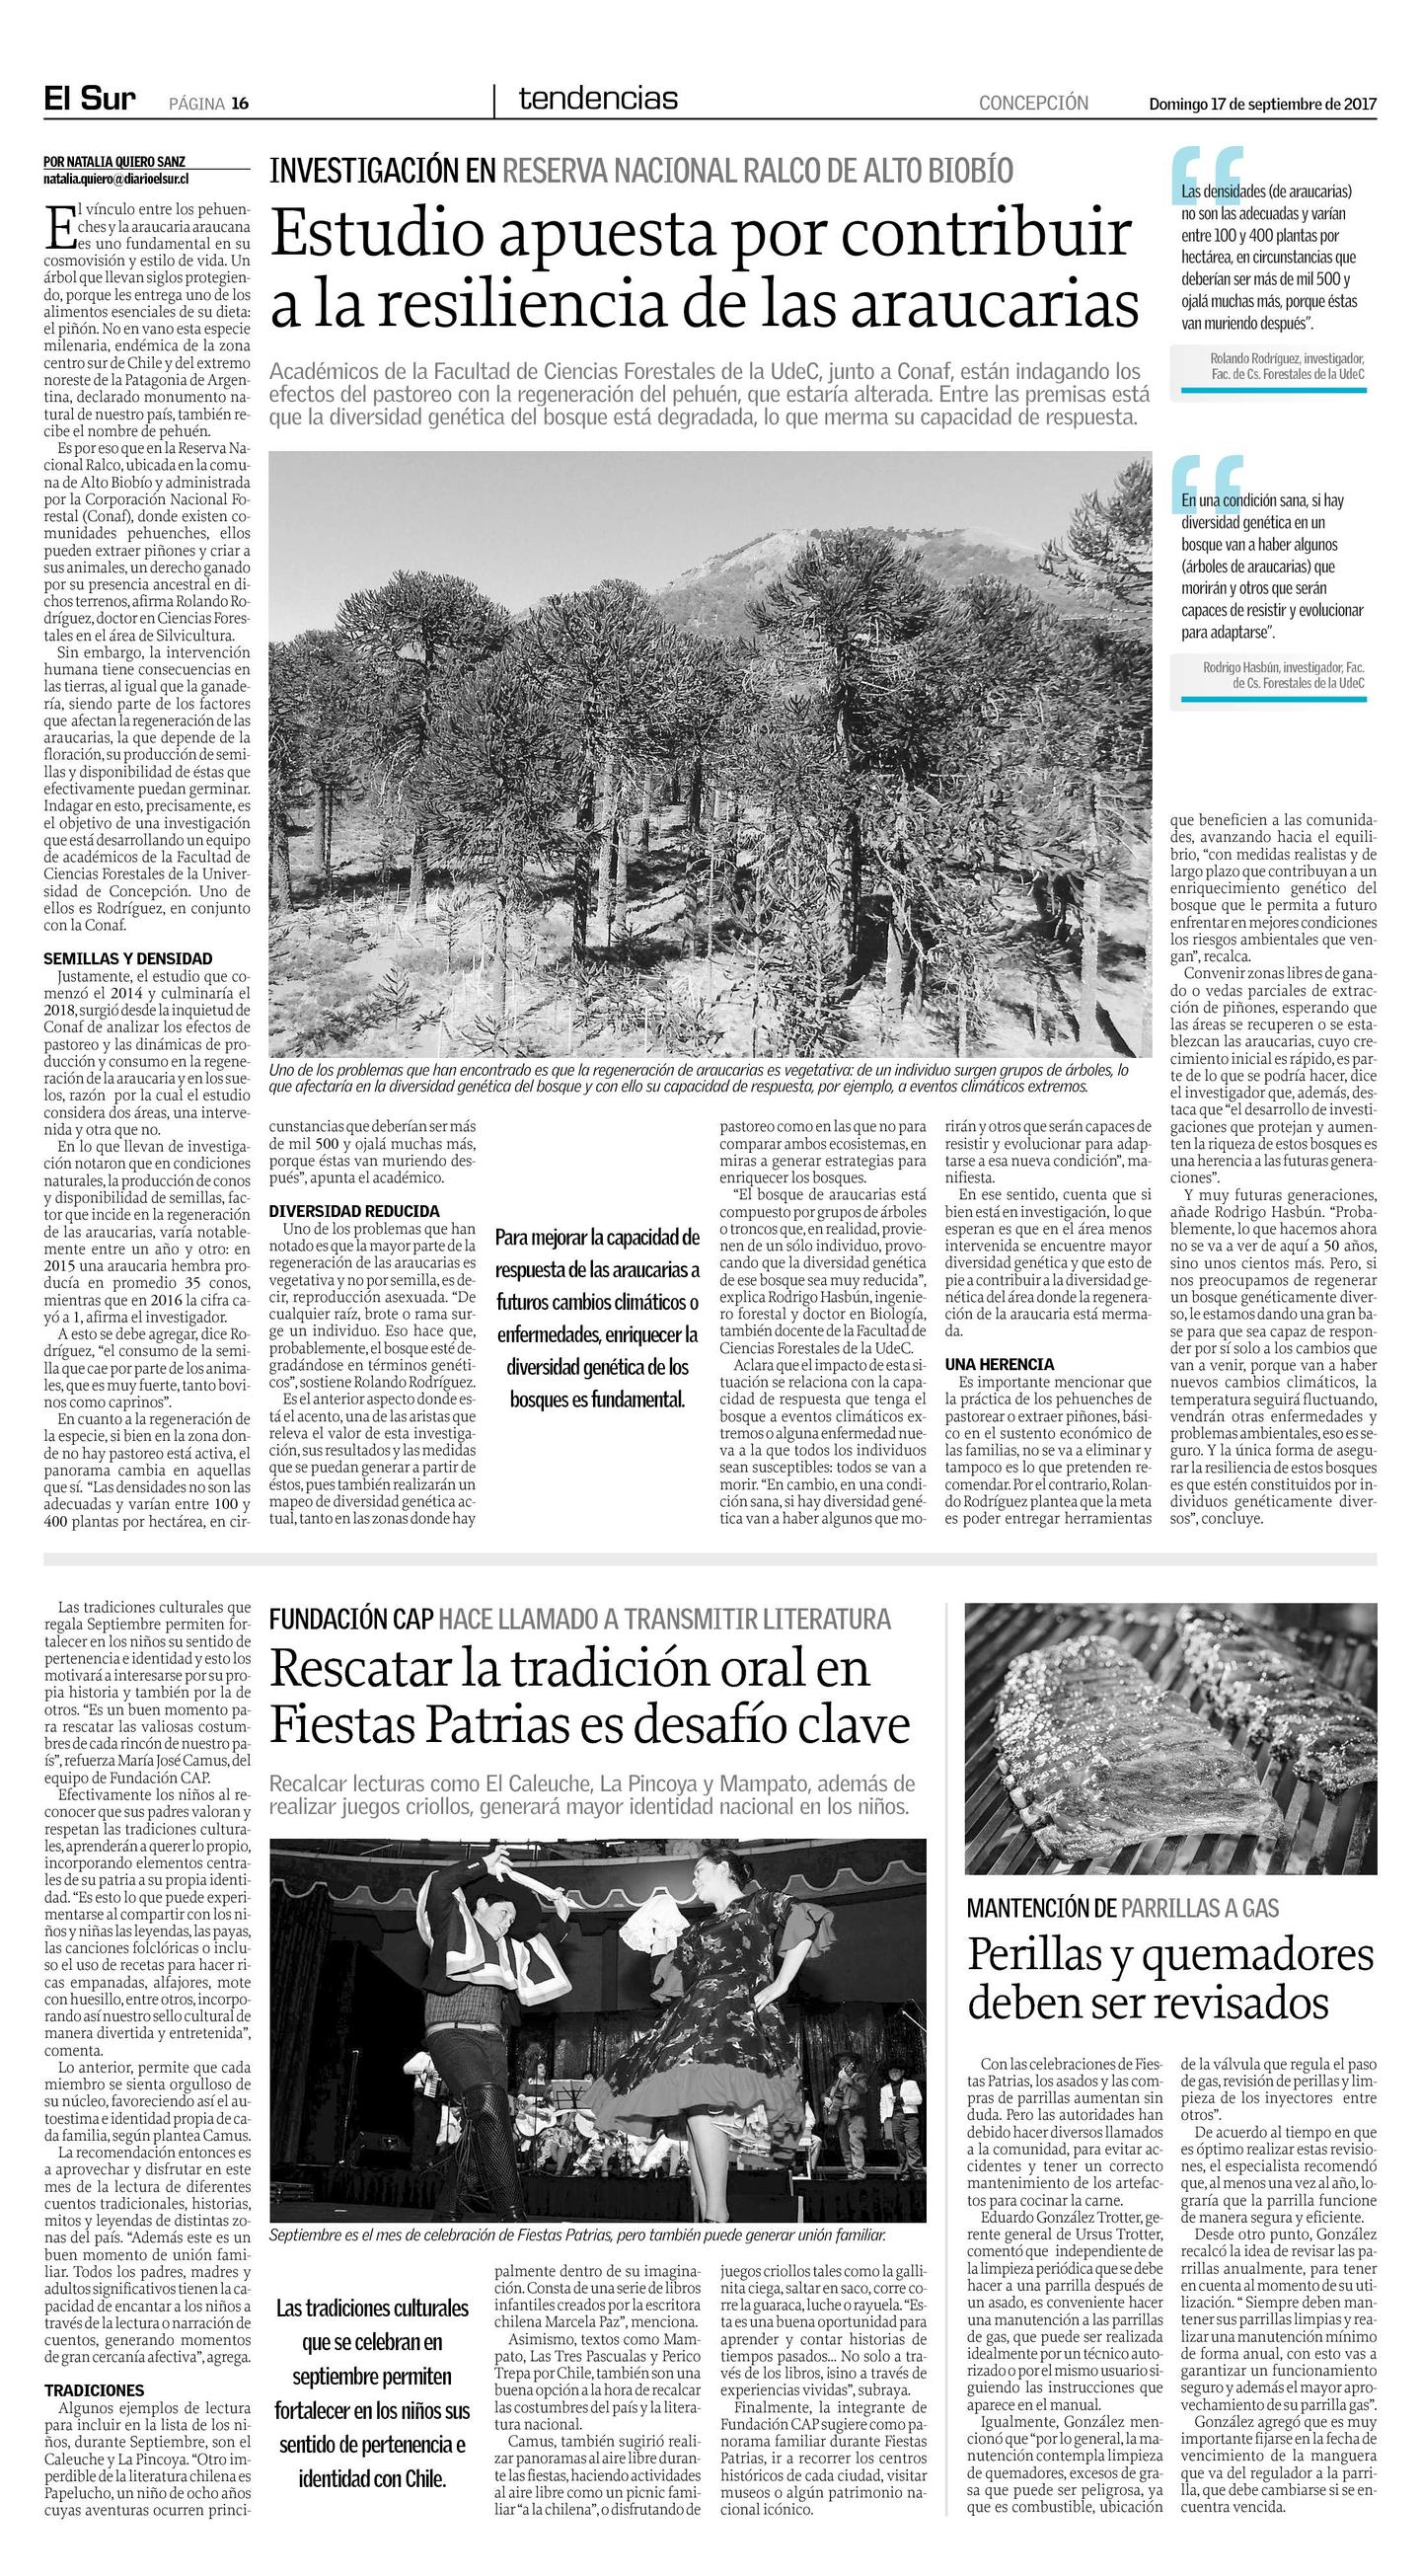 Diario El Sur, Tendencias, domingo 17 de septiembre de 2017